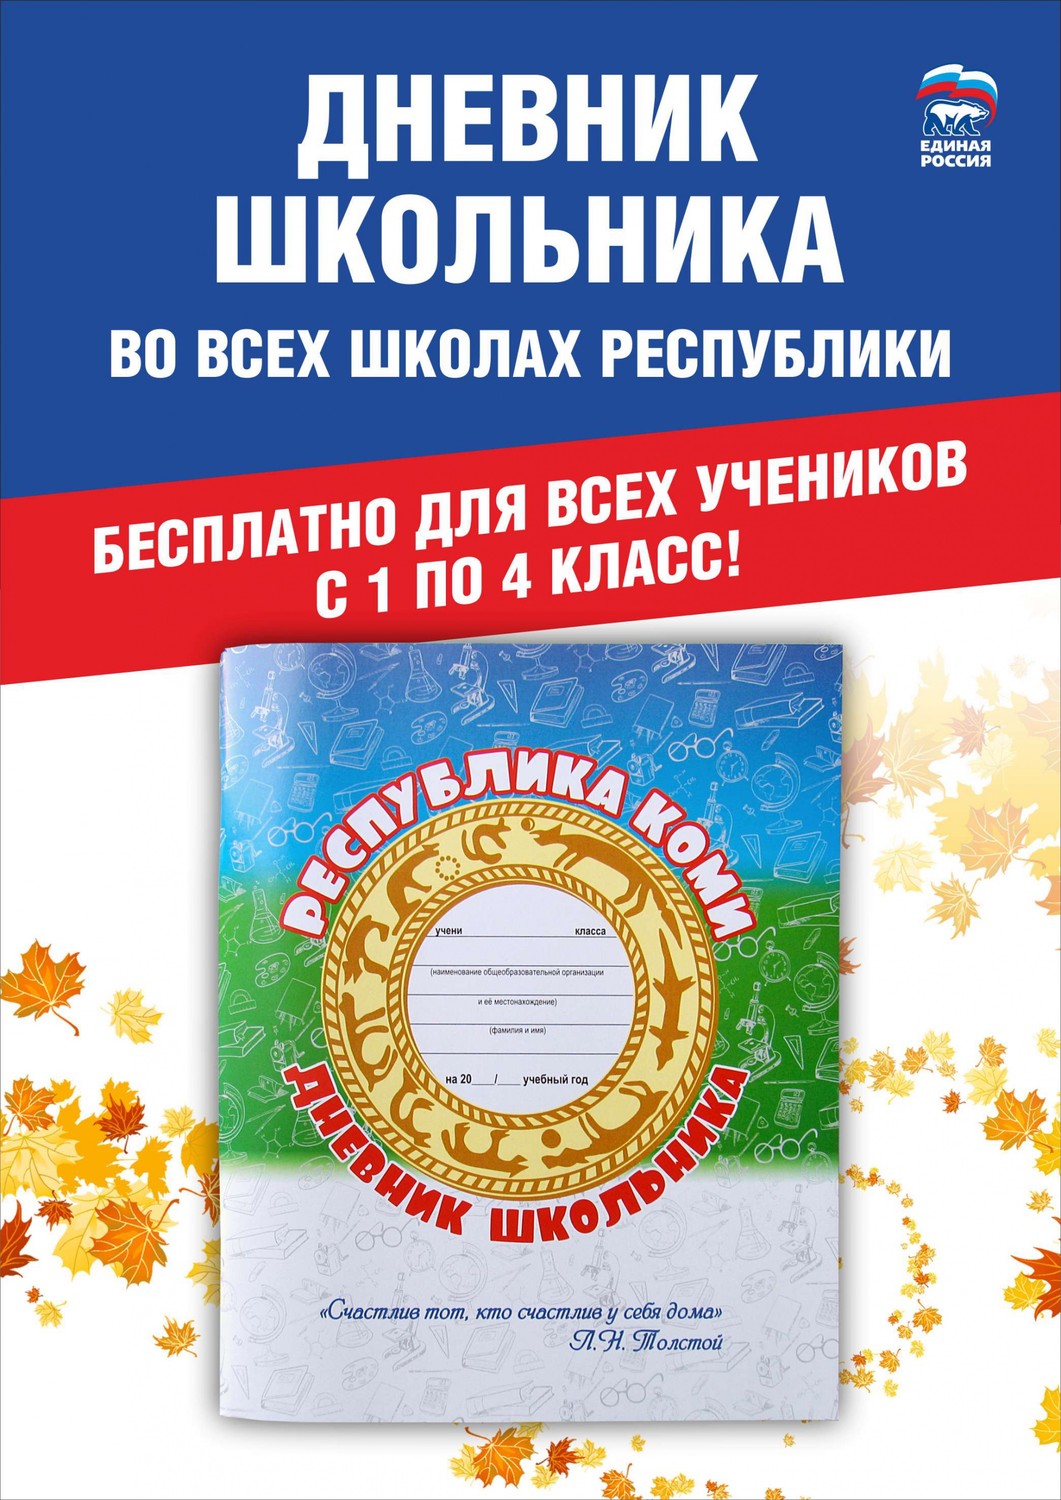 Партийный проект «Дневник школьника» для обучающихся 1-х классов Республики Коми.